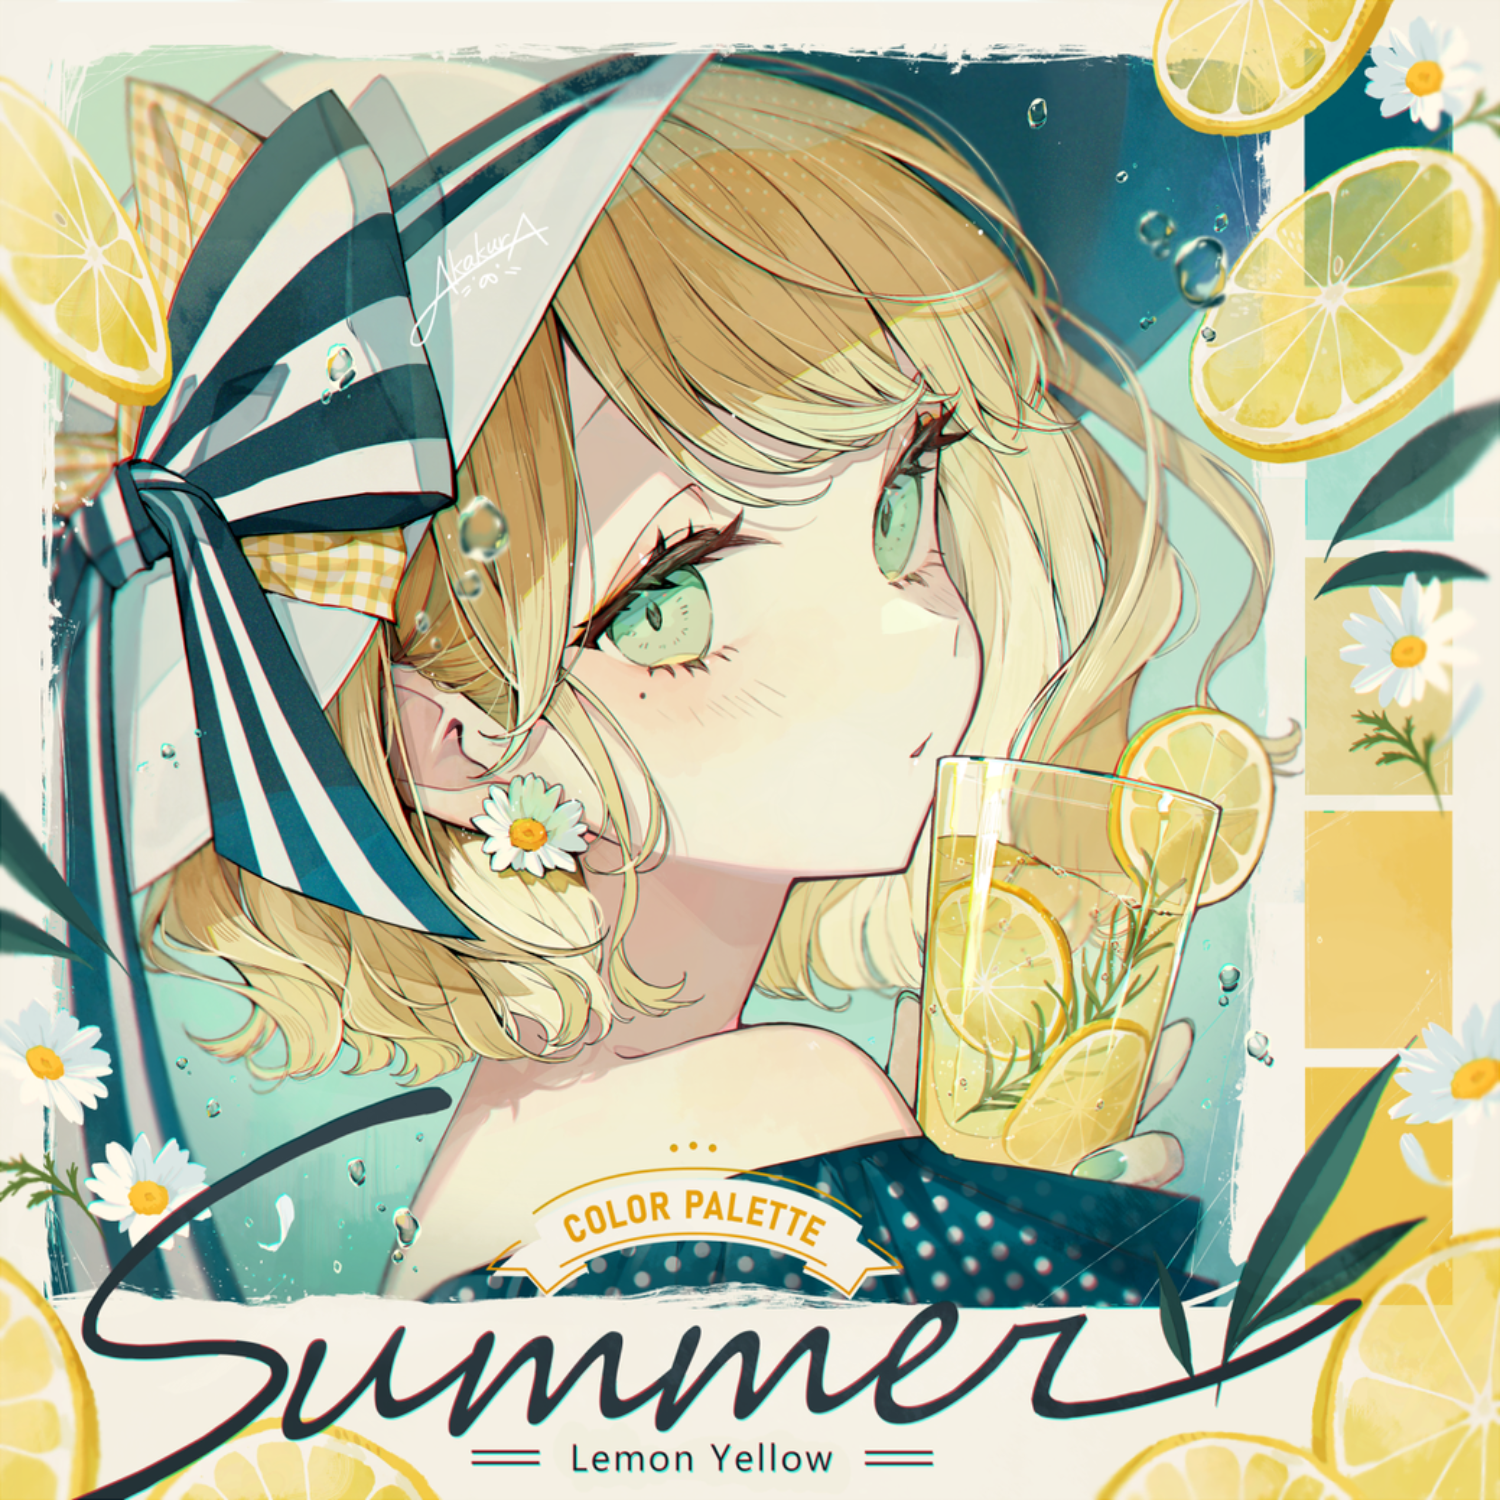 Anime 1500x1500 Akakura anime girls Pixiv blonde green eyes lemons drink hat flowers